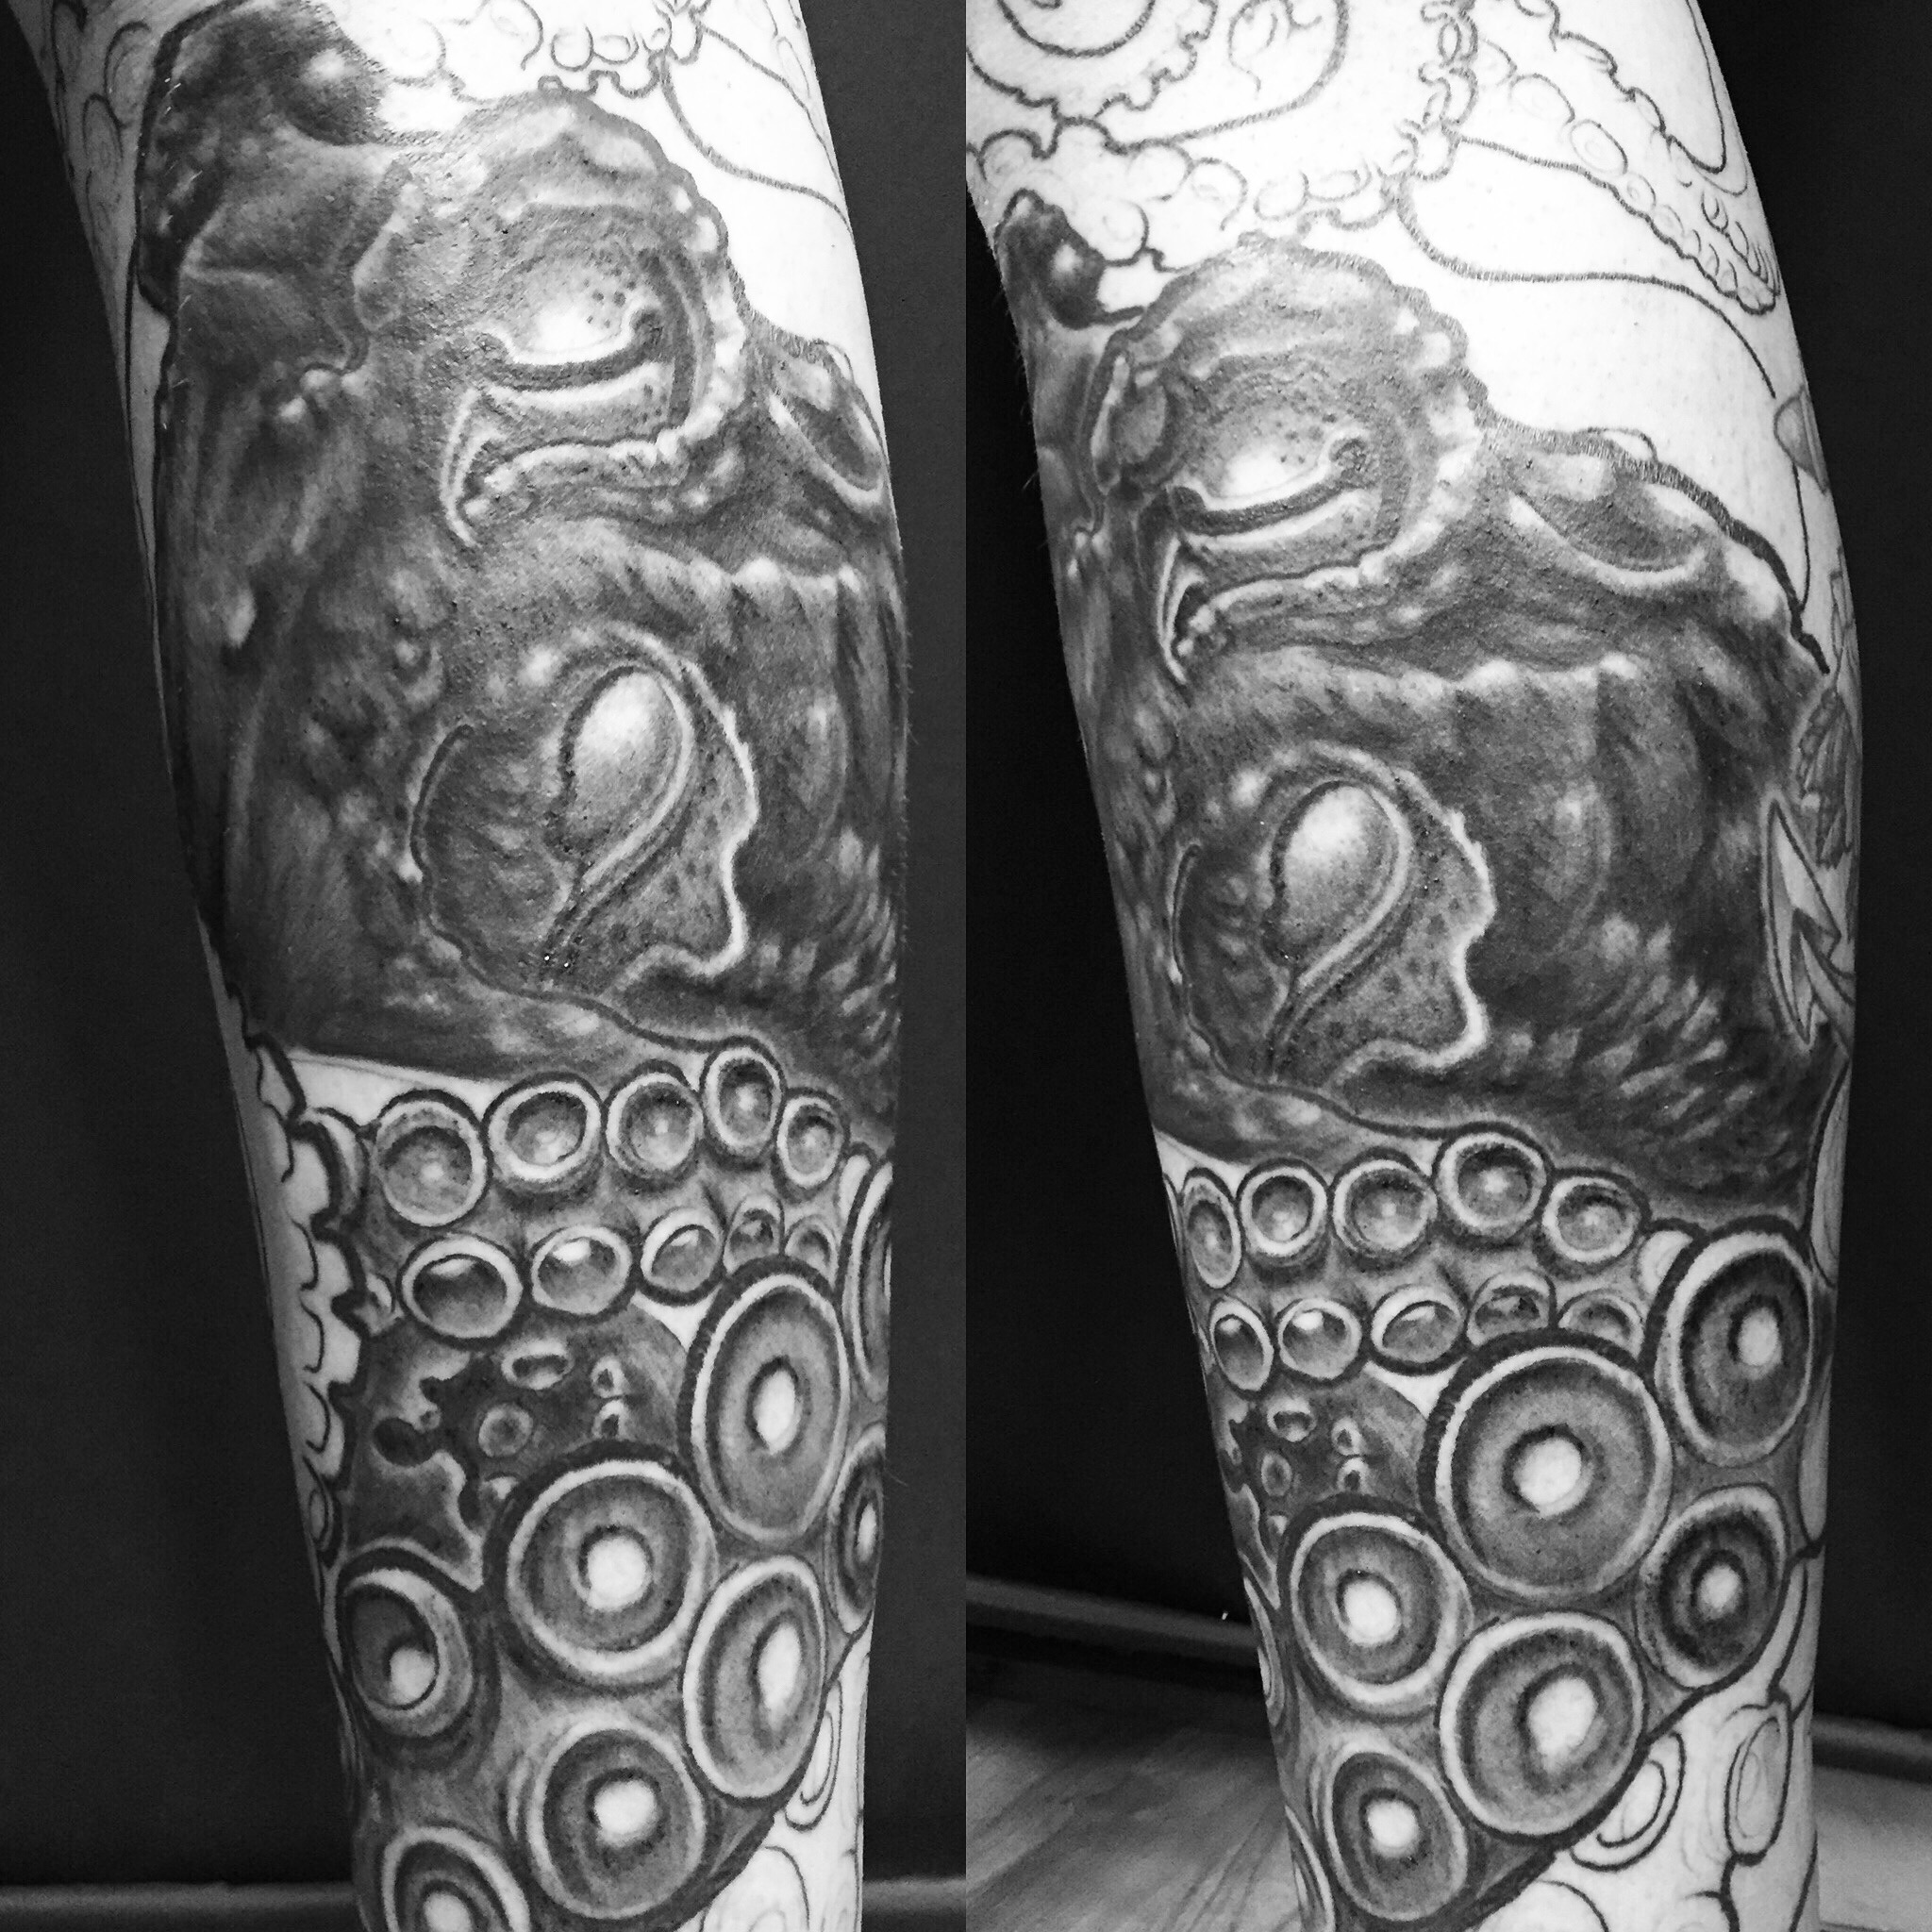 Octopus Tattoo by Ben-Lucas on DeviantArt